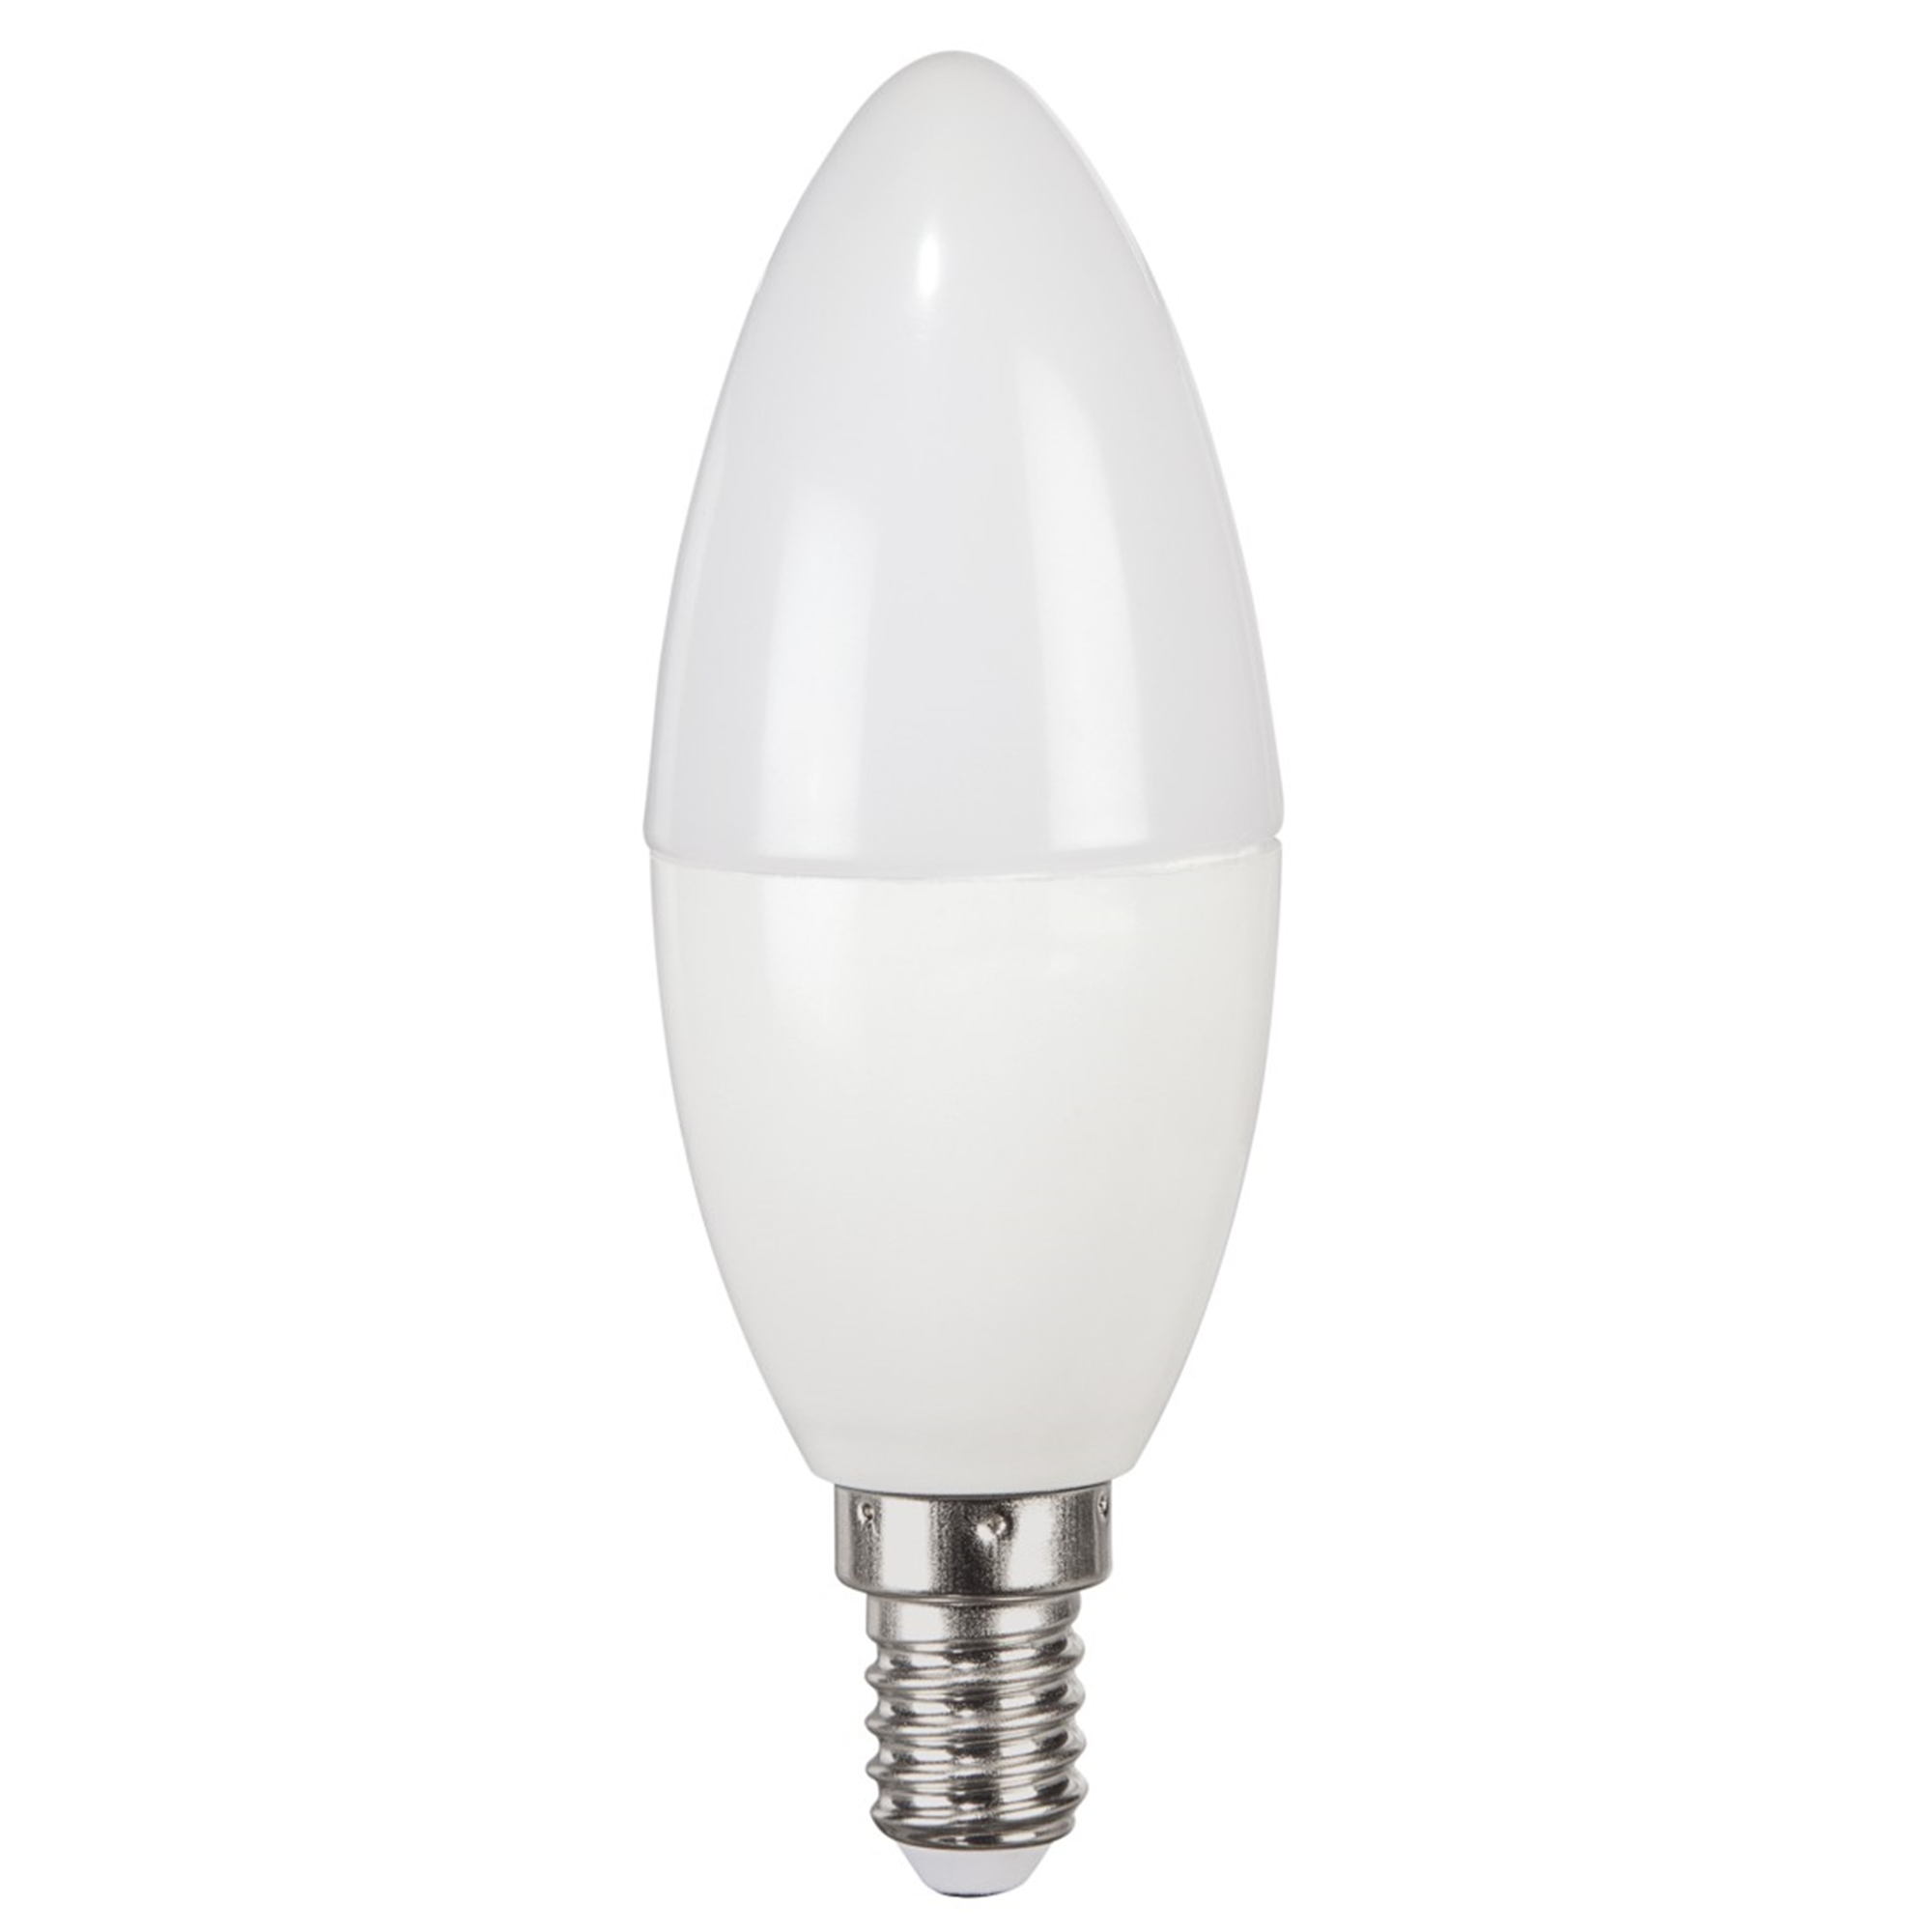 XAVAX E14, 806lm ersetzt LED-Lampe E14 Warmweiß 60W